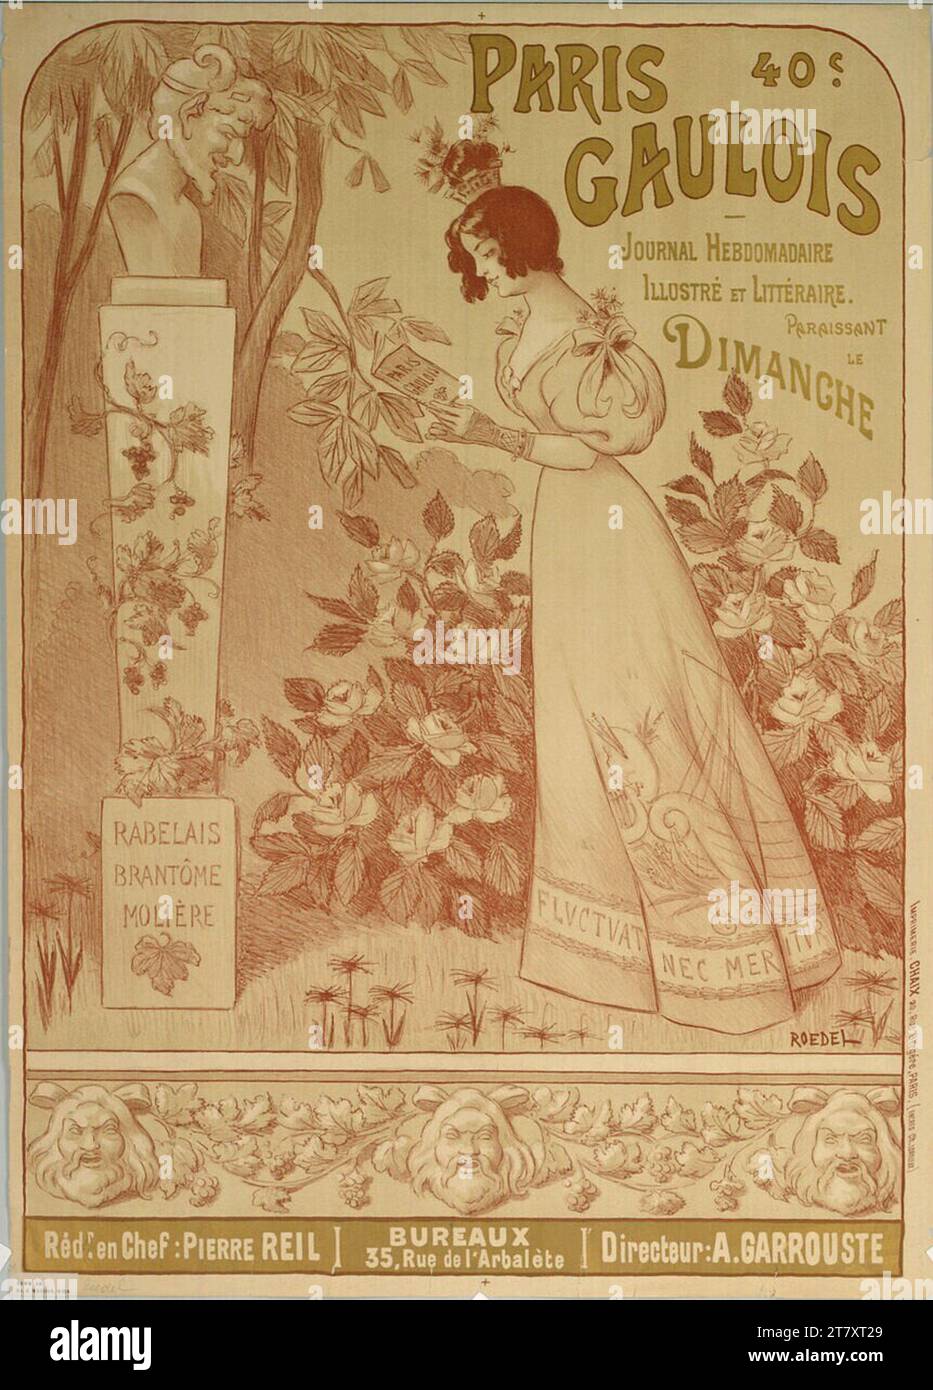 Roedel Paris Gallic; SETTIMANALE. Colore intorno a 1900 Foto Stock